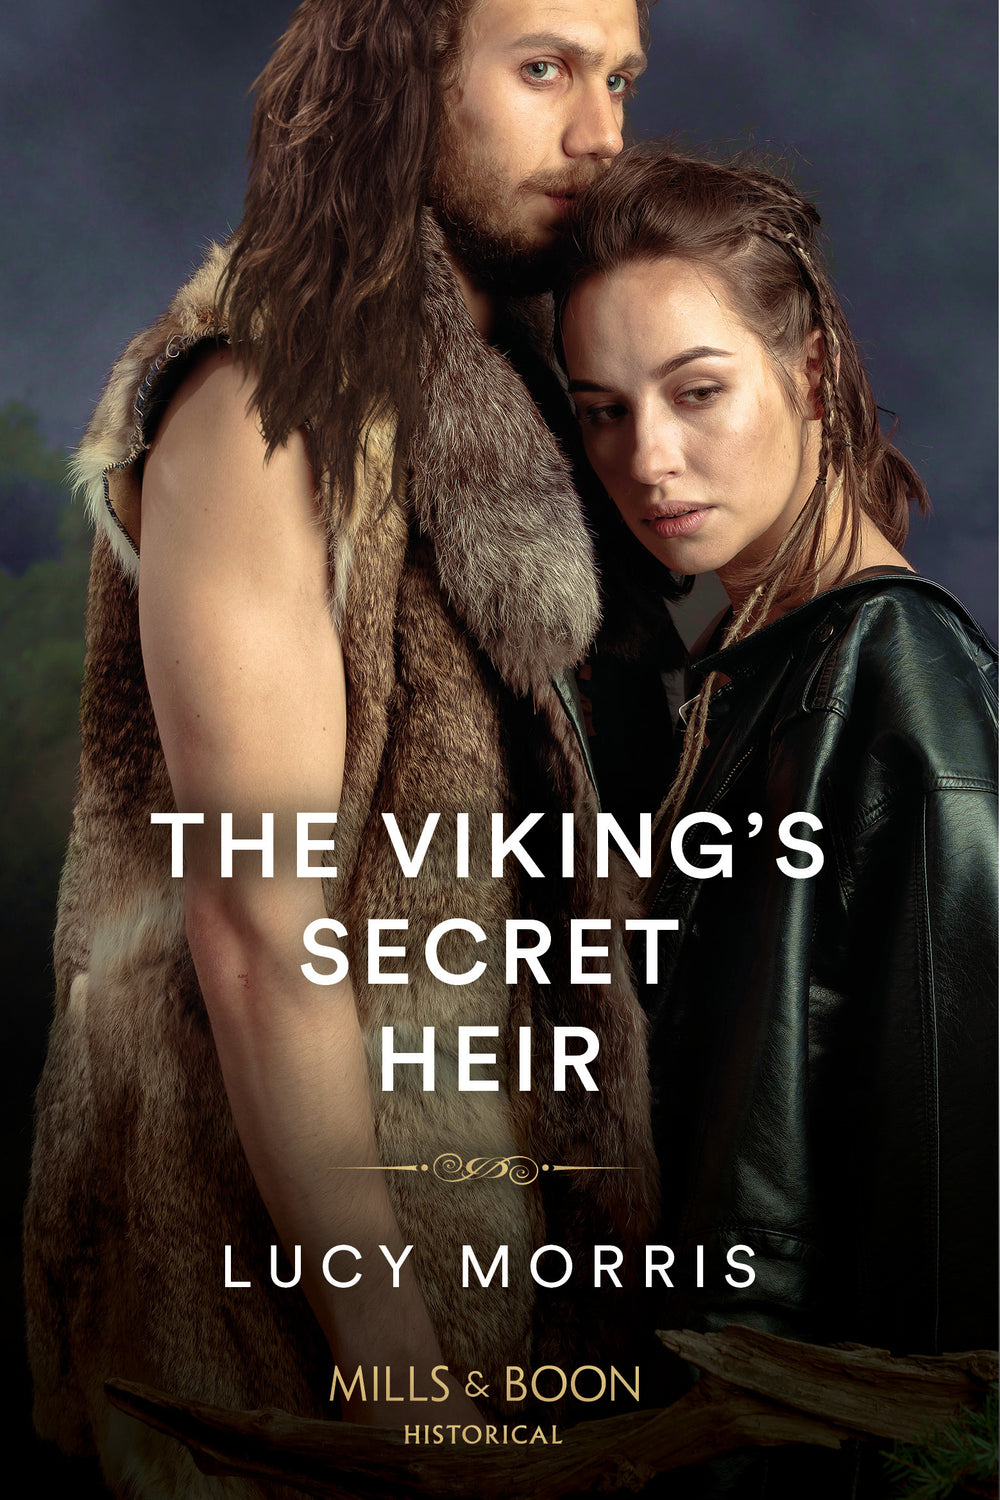 The Viking's Secret Heir